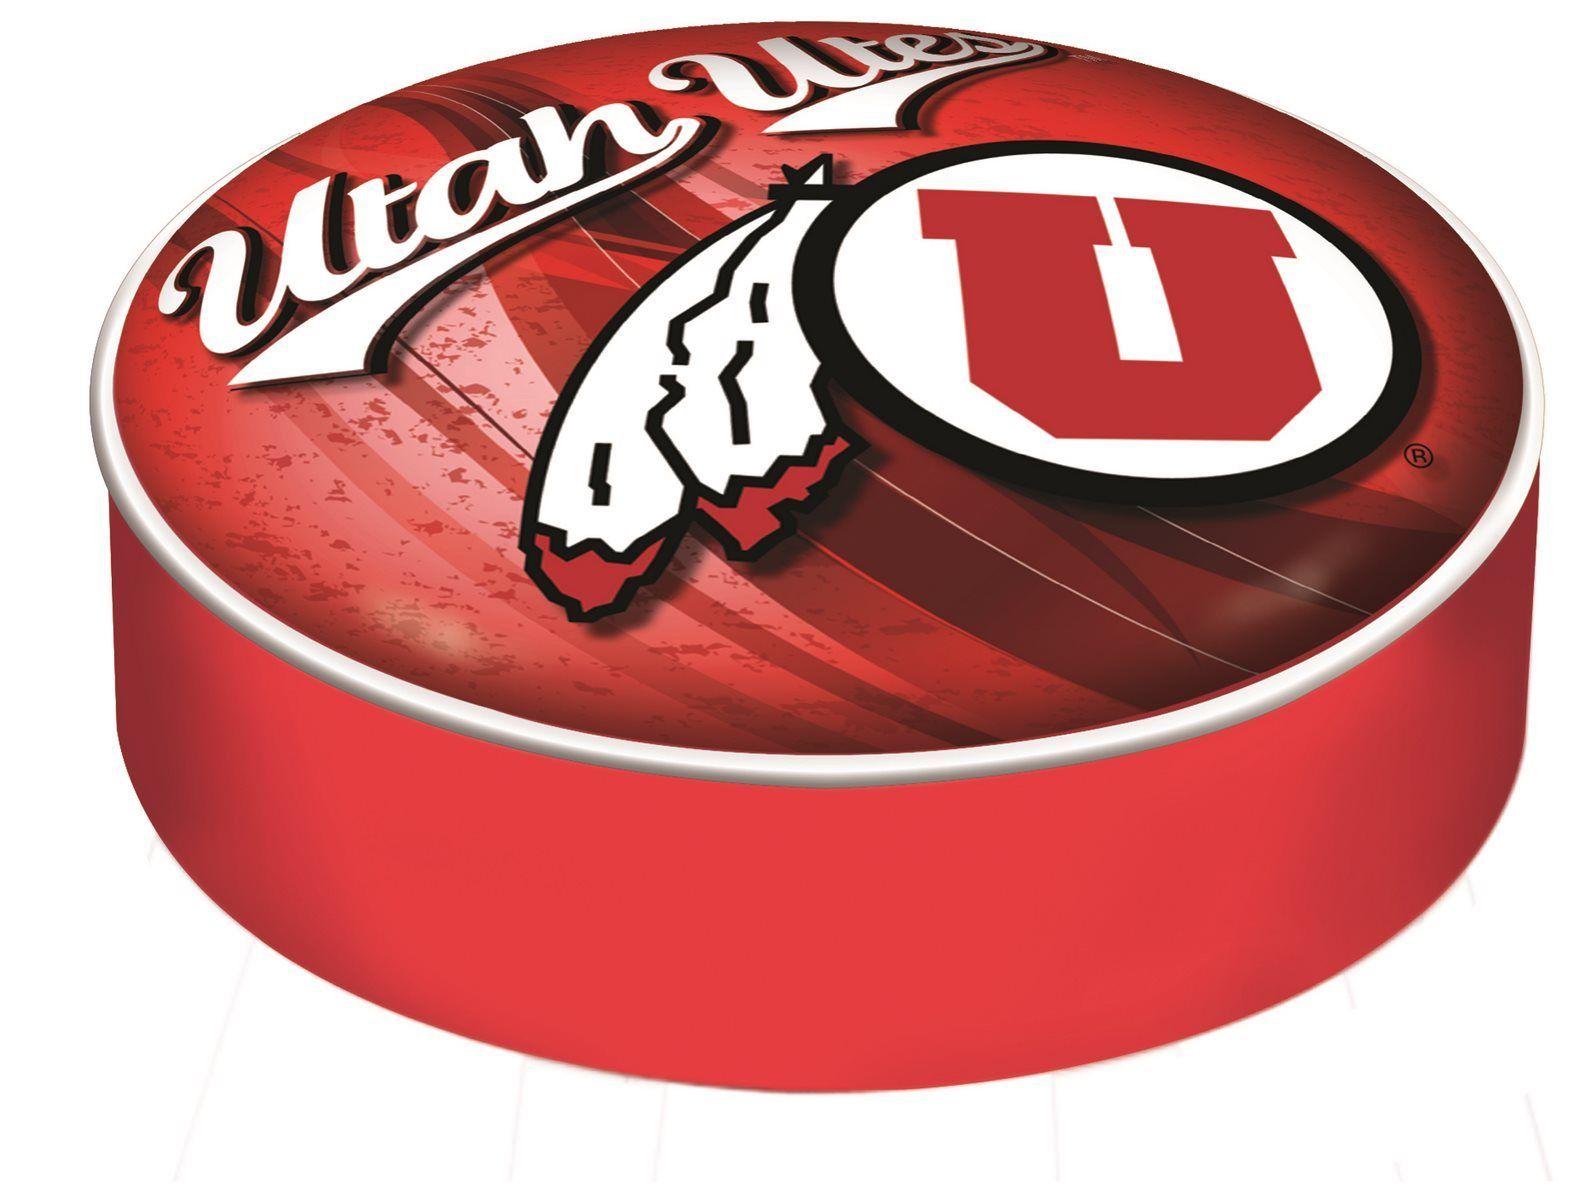 University of Utah Utes Logo - University of Utah Seat Cover - Utah Utes Logo